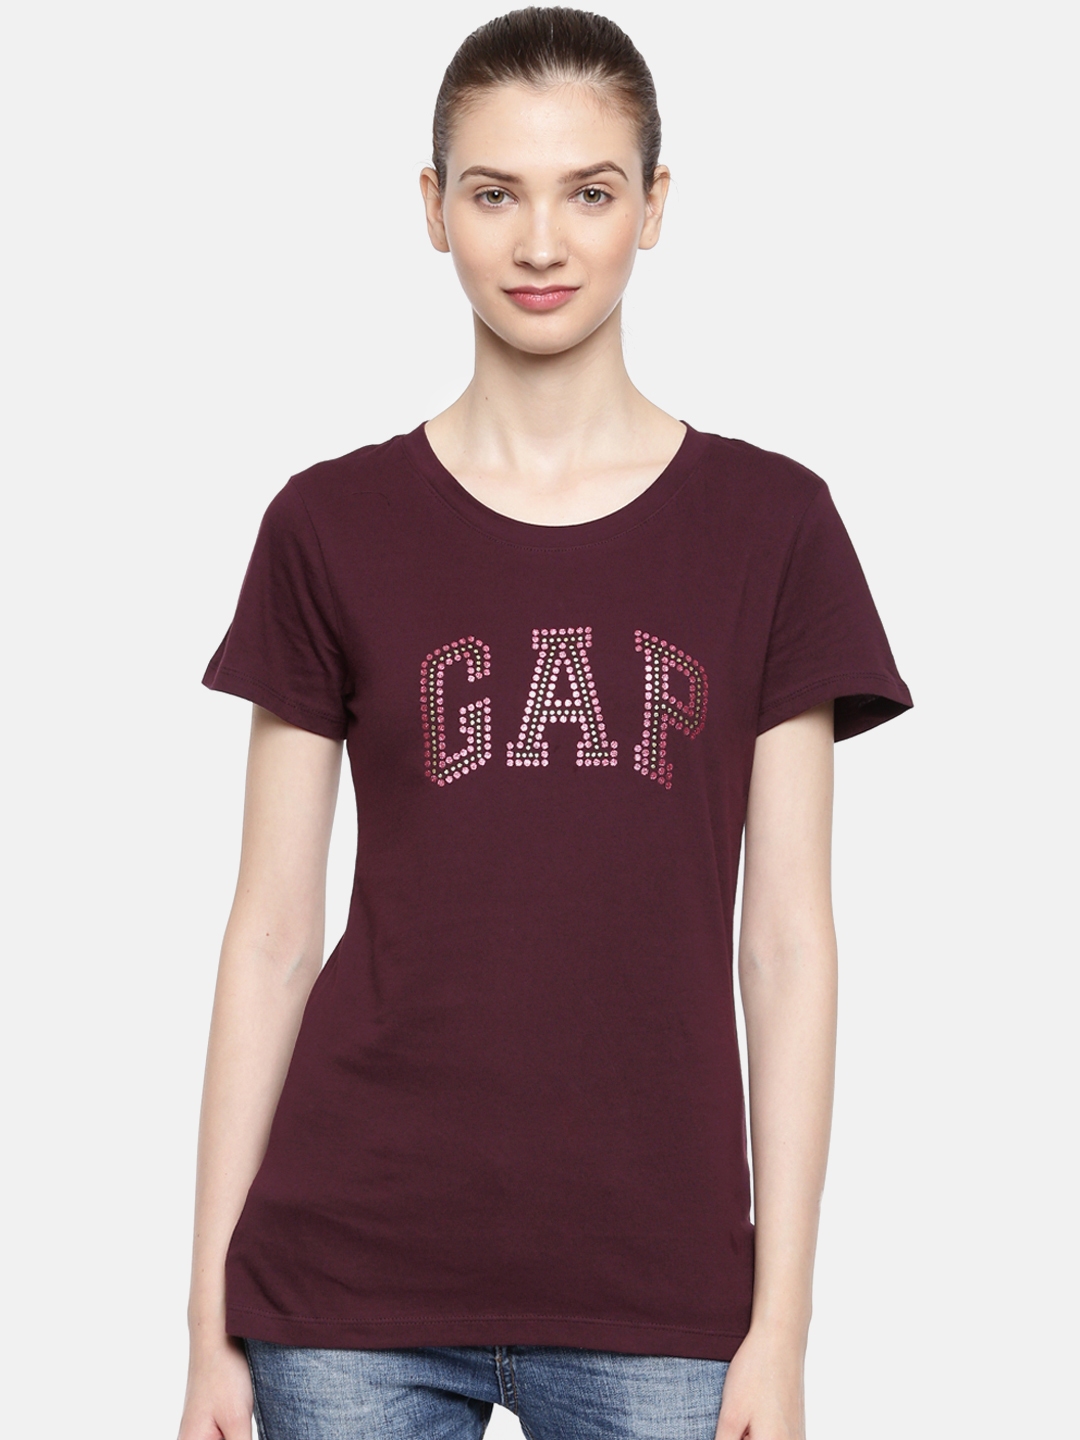 gap ladies tee shirts